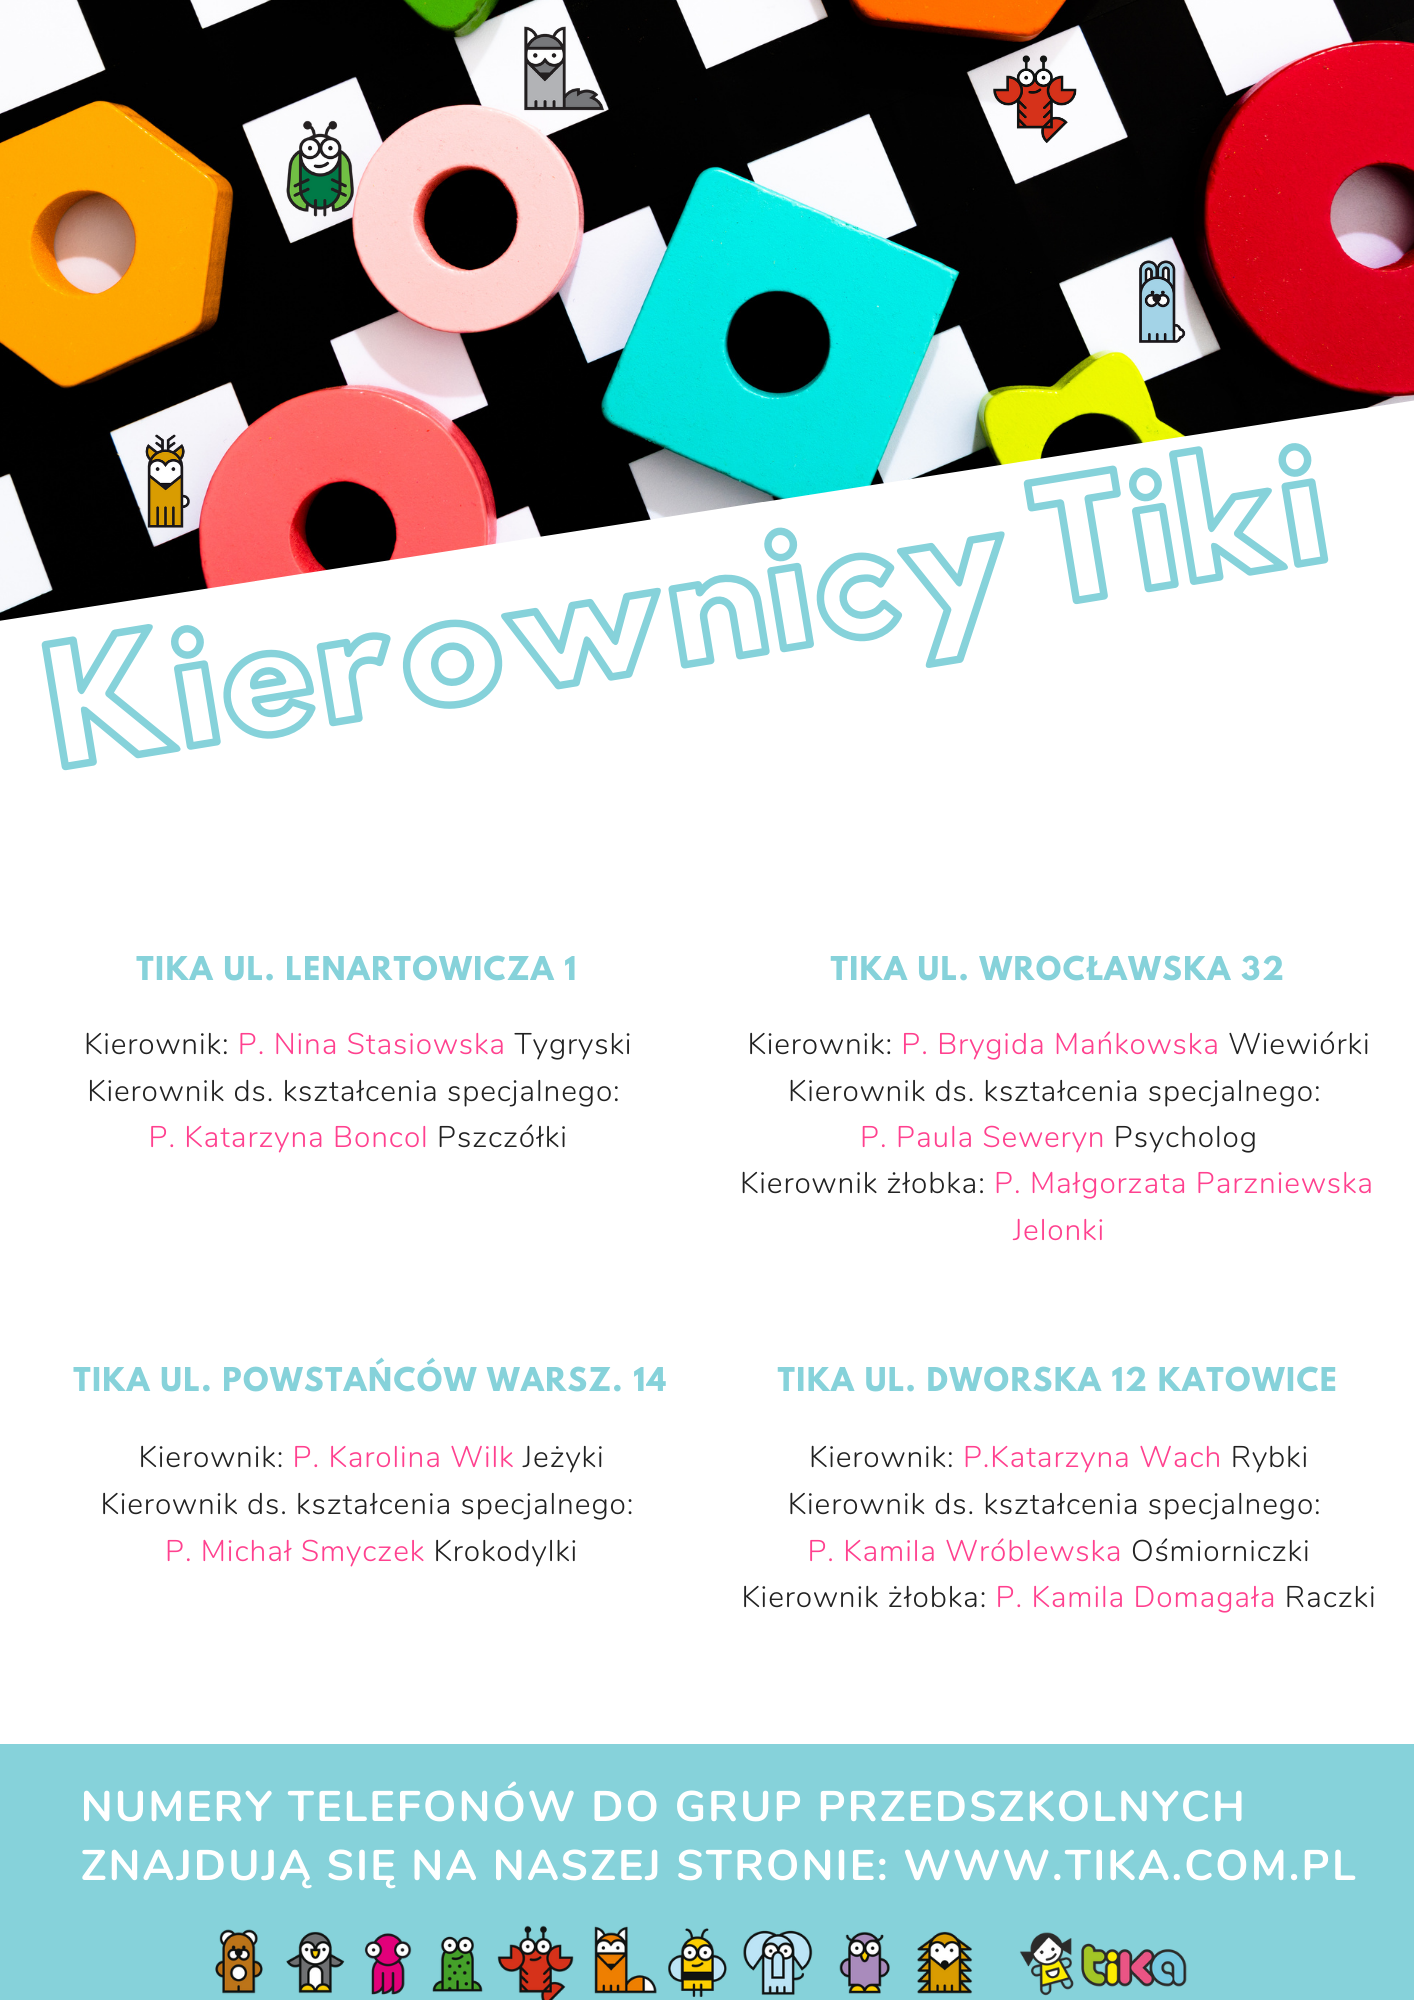 Kopia Kierownicy Tiki.png (1.01 MB)